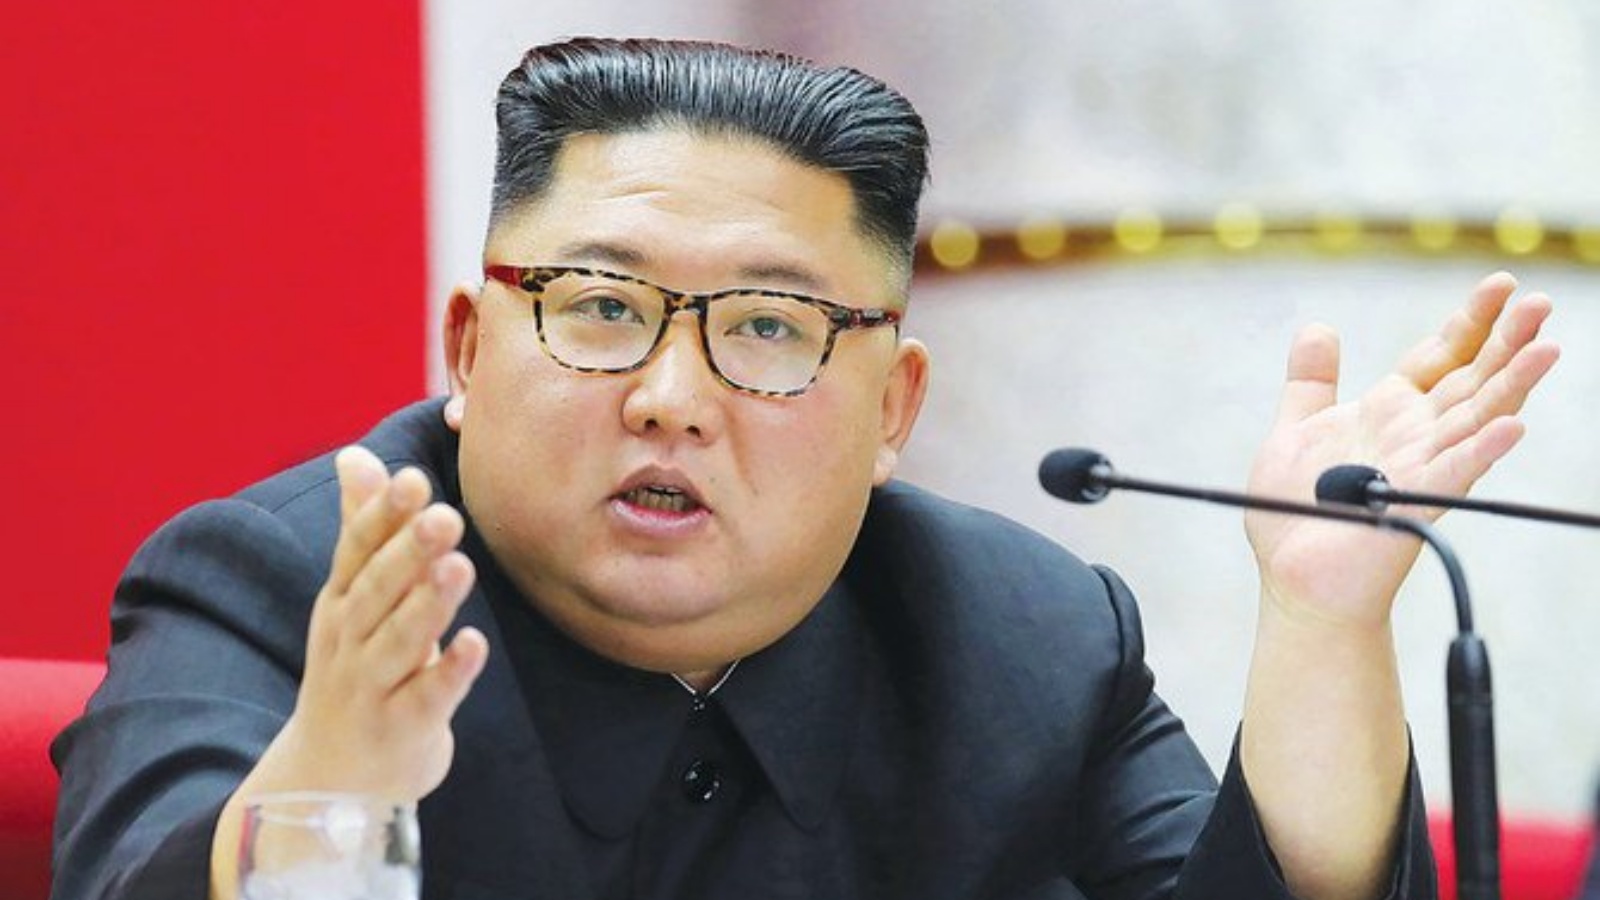  زعيم كوريا الشمالية كيم جونغ أون. (أرشيفية)